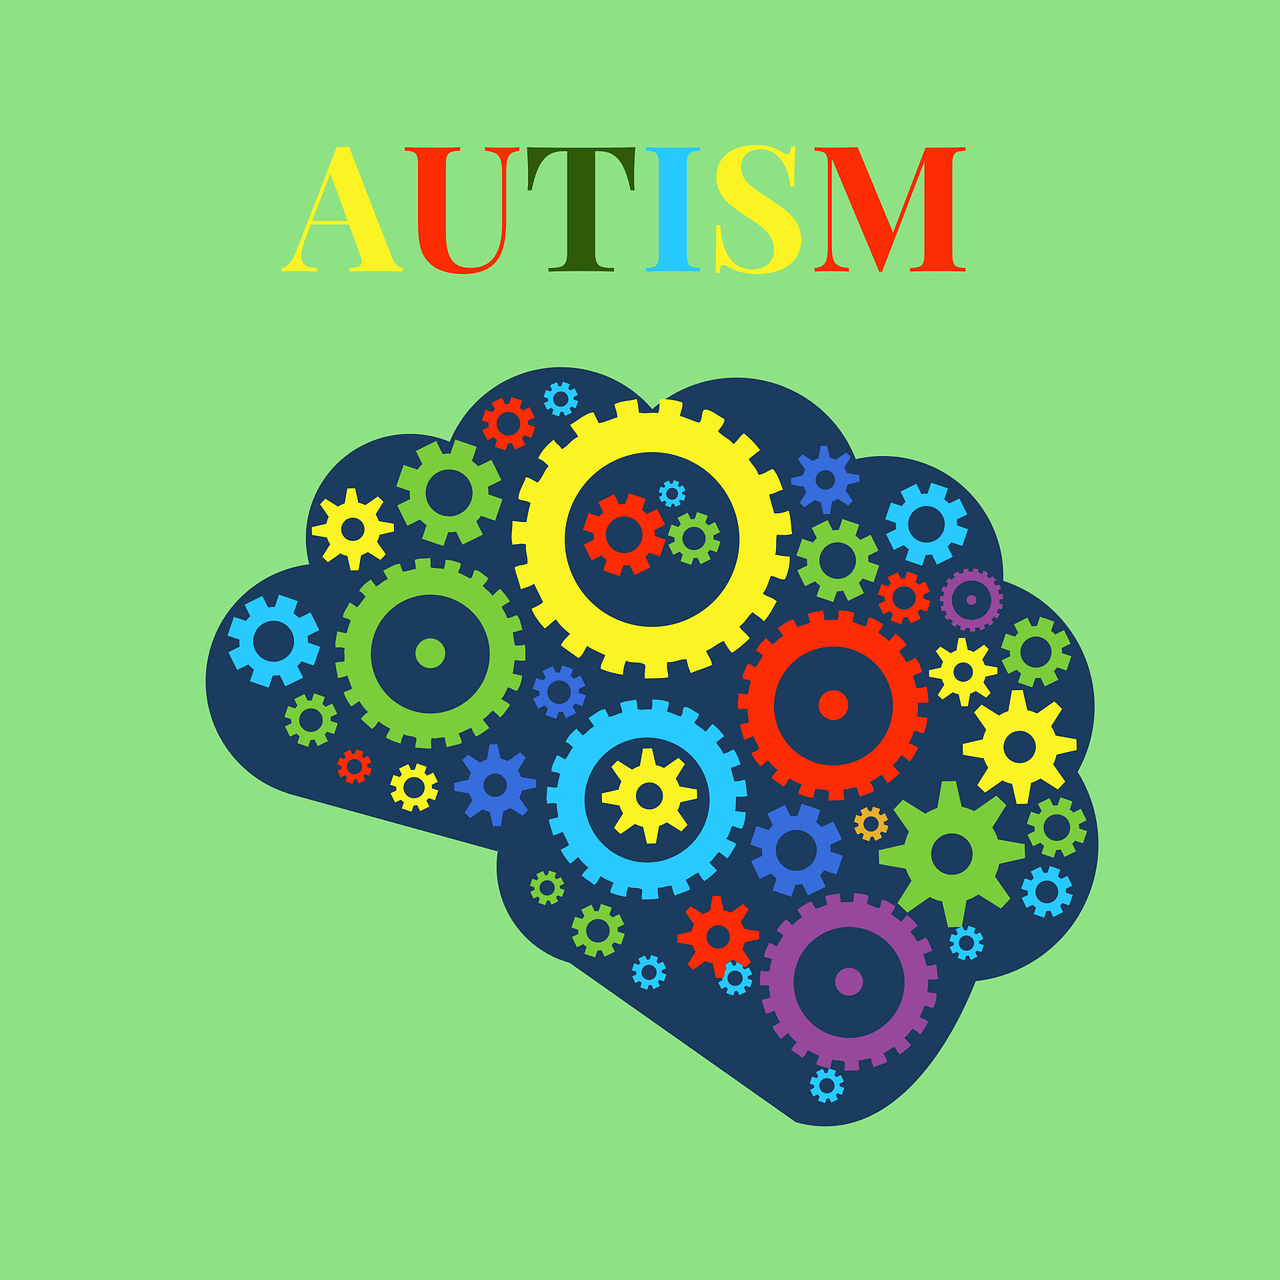 Stosujemy ADI-R i ADOS-2, które stanowią tzw. „złoty standard” w diagnozie spektrum autyzmu